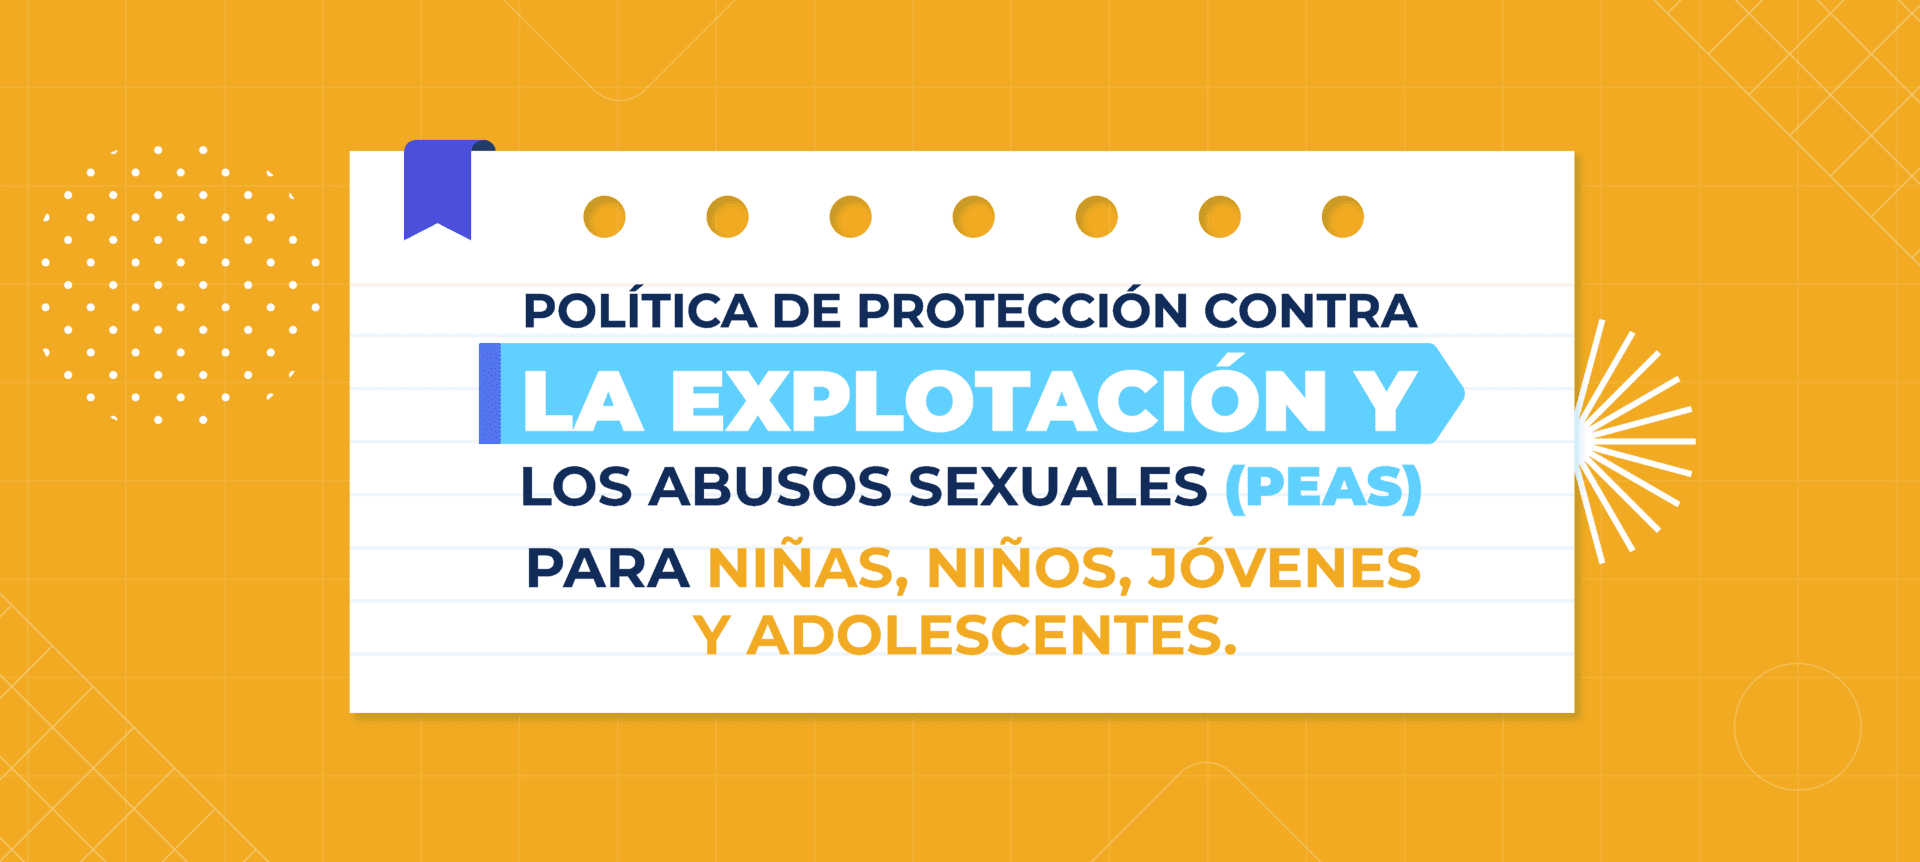 Política de protección contra la explotación y los abusos sexuales (PEAS) Niñas, niños,  jóvenes y adolescentes